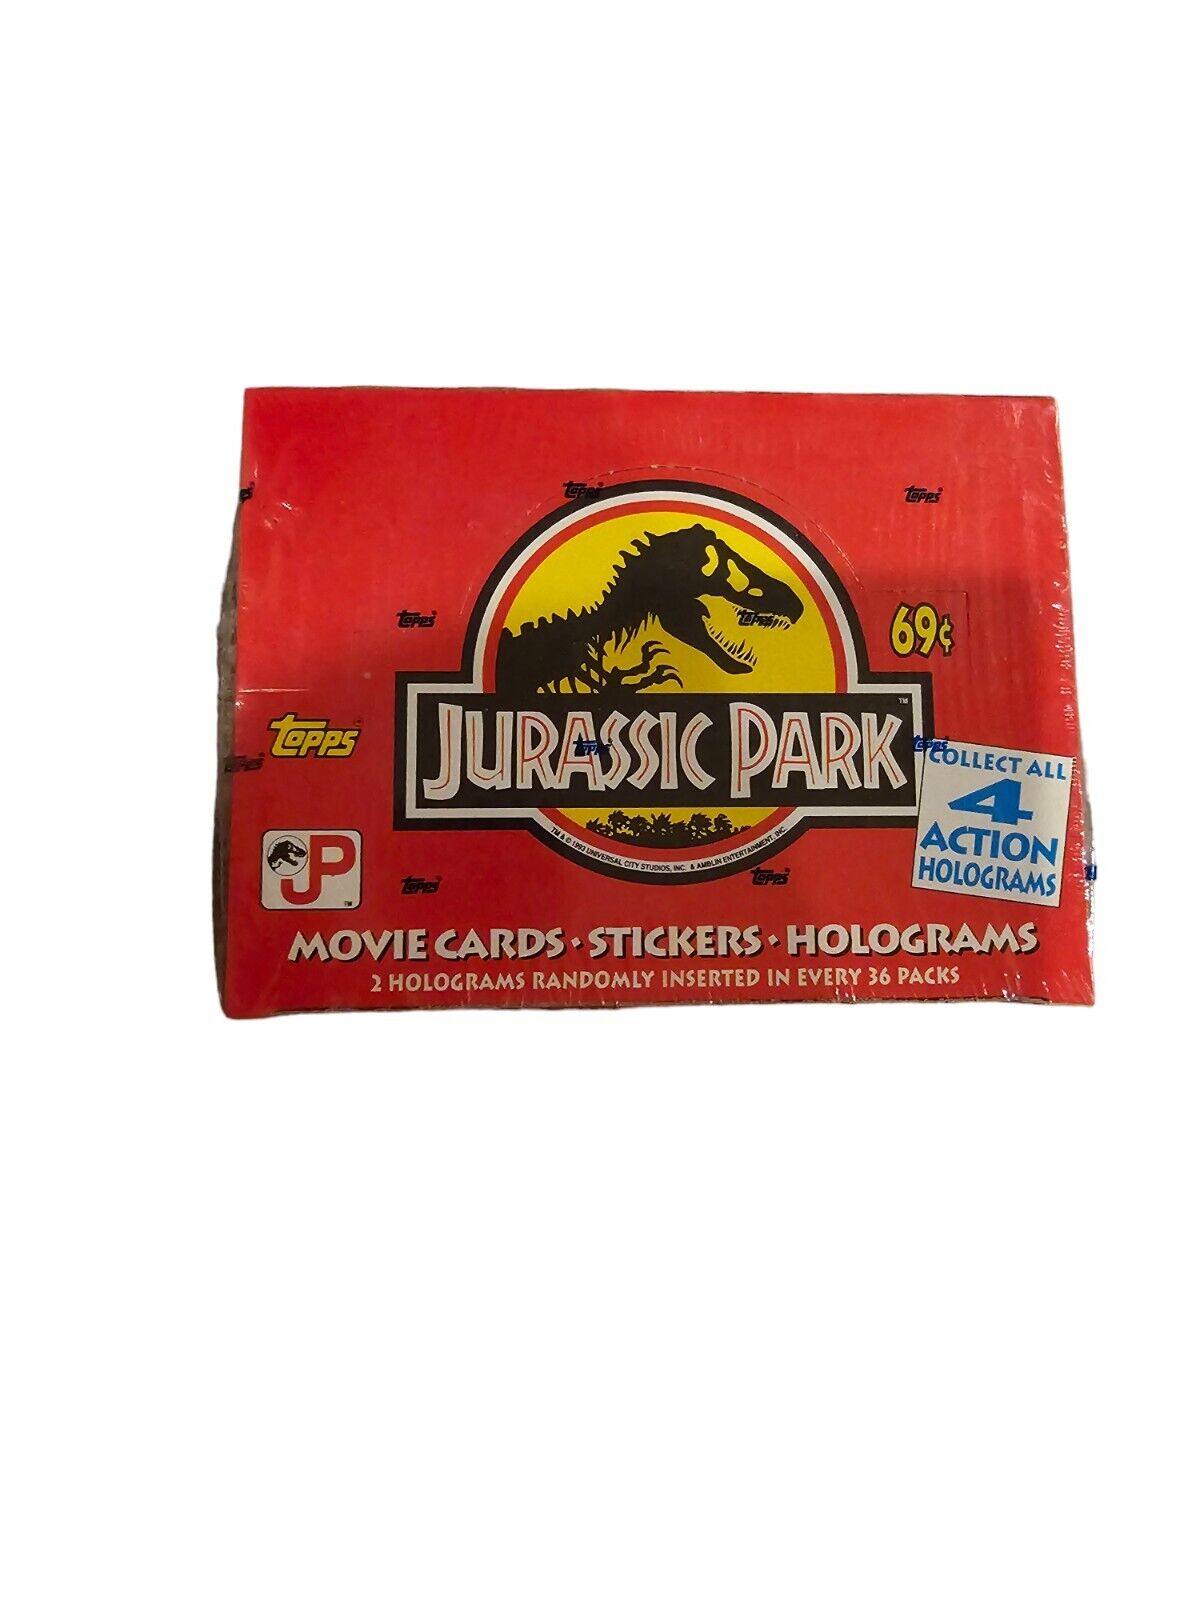 1992 Topps Jurassic Park Trading Cards Sealed Box Holograms 36 Packs